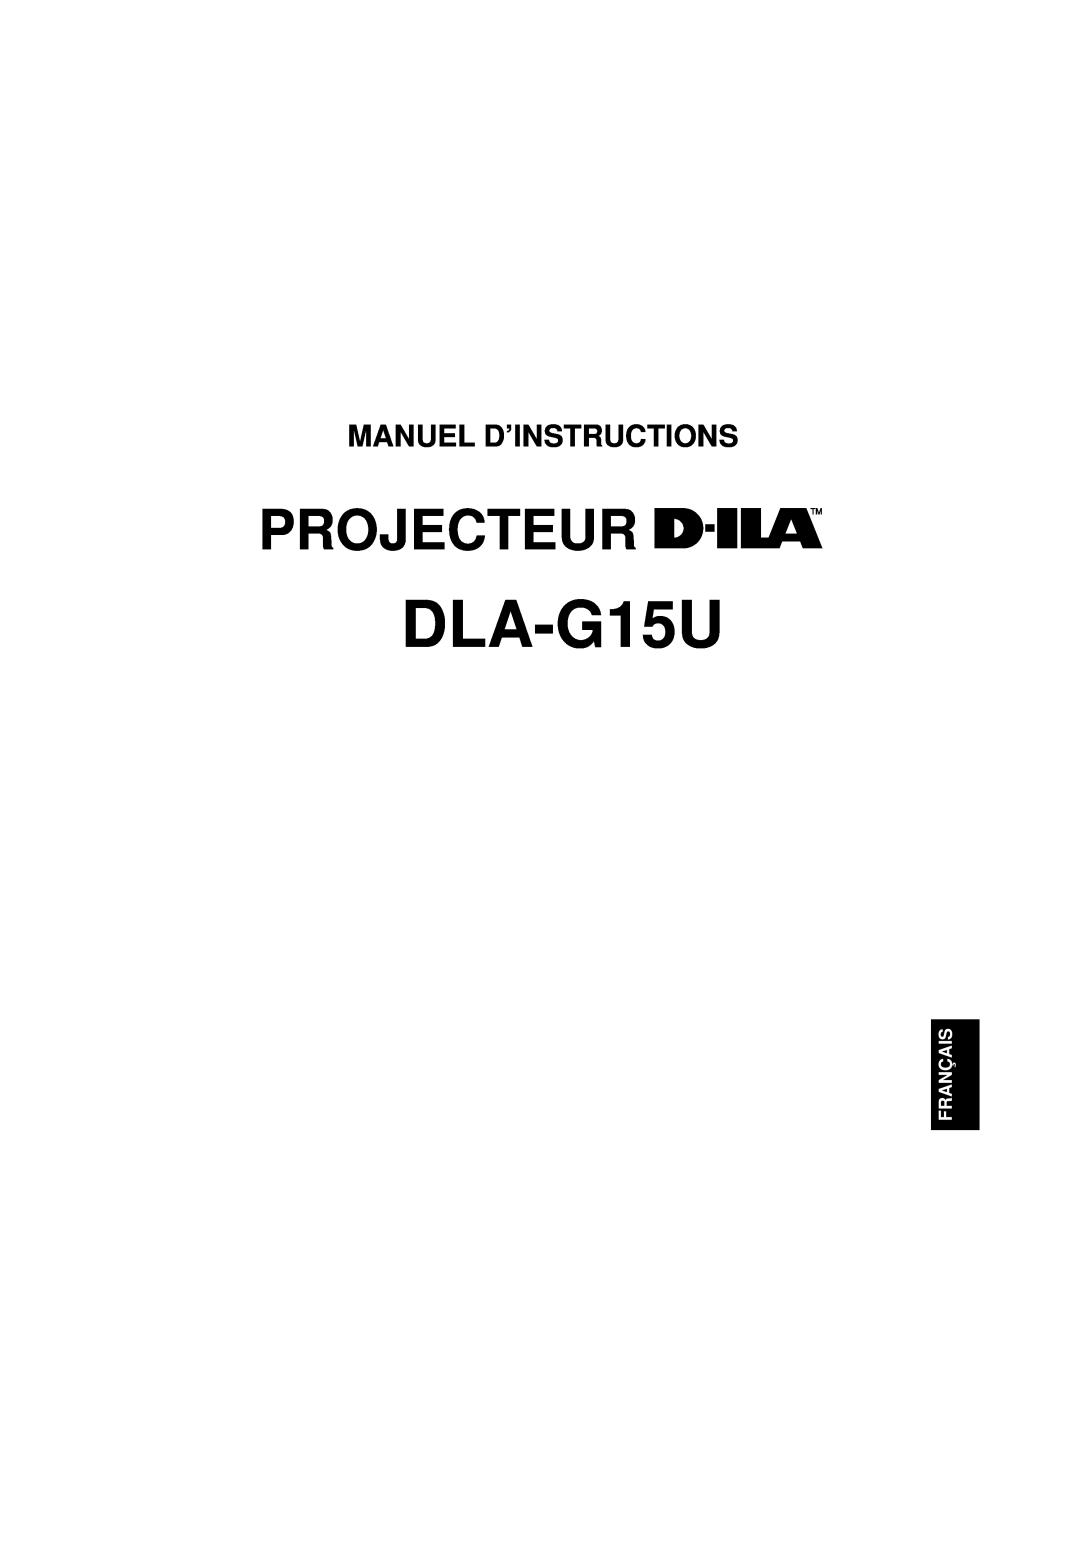 JVC DLA-G15U manual Projecteur, Manuel D’Instructions, Français 